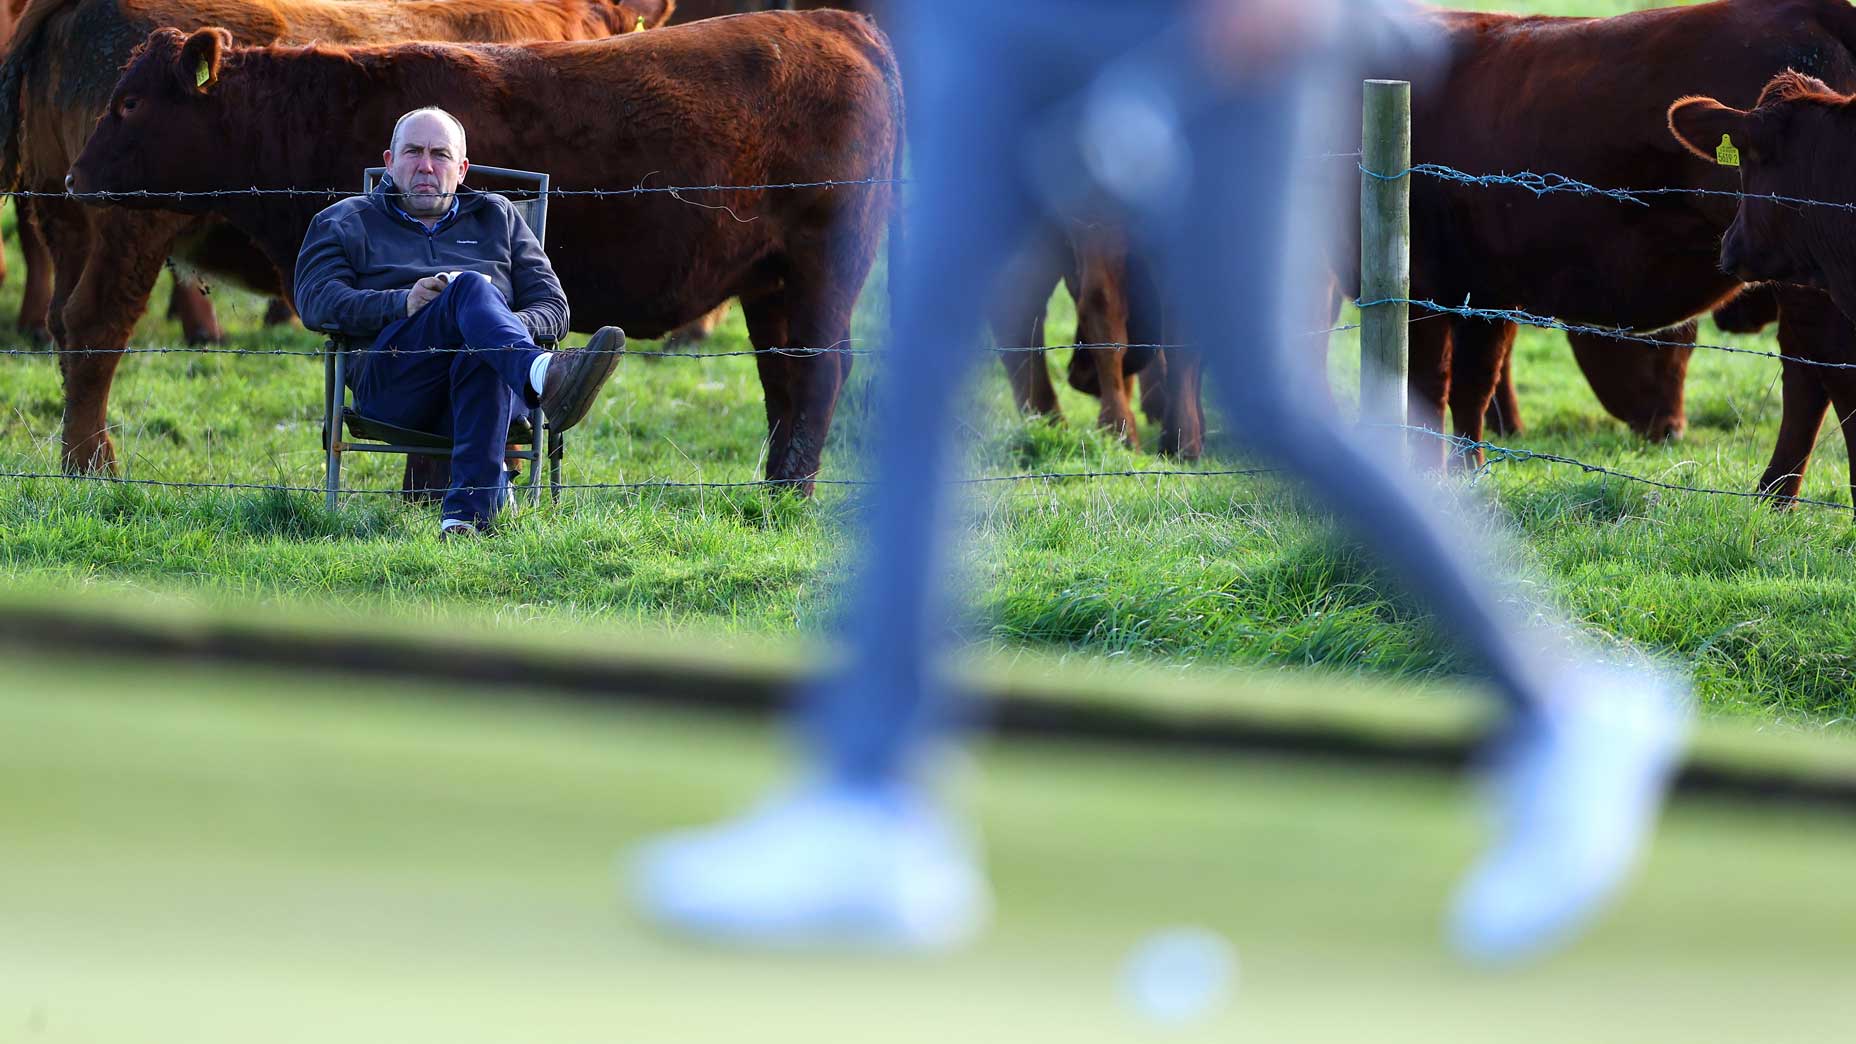 WATCH: A farmer watches golf, 20 cows 